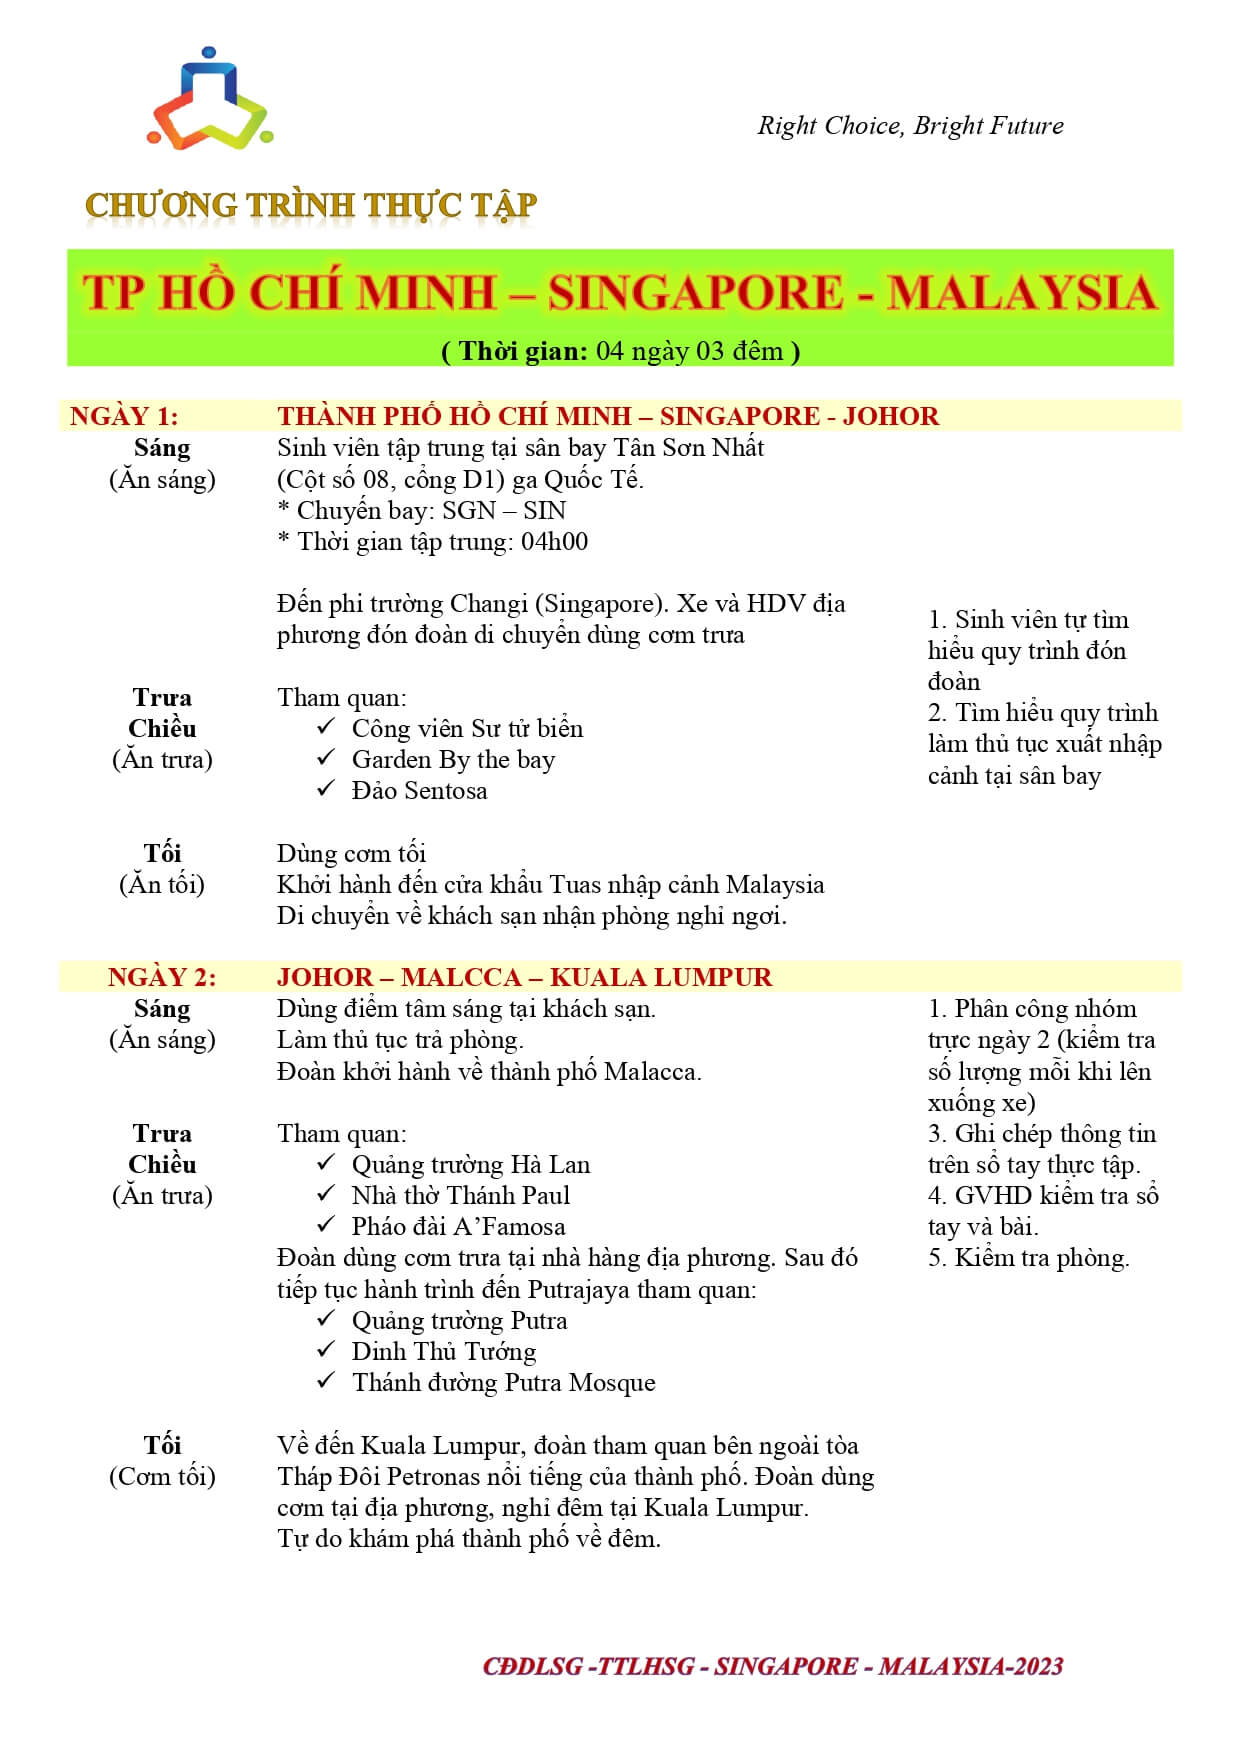 7- Chương trình Singapore - Maylaysia (04 ngày 03 đêm)_page-0001